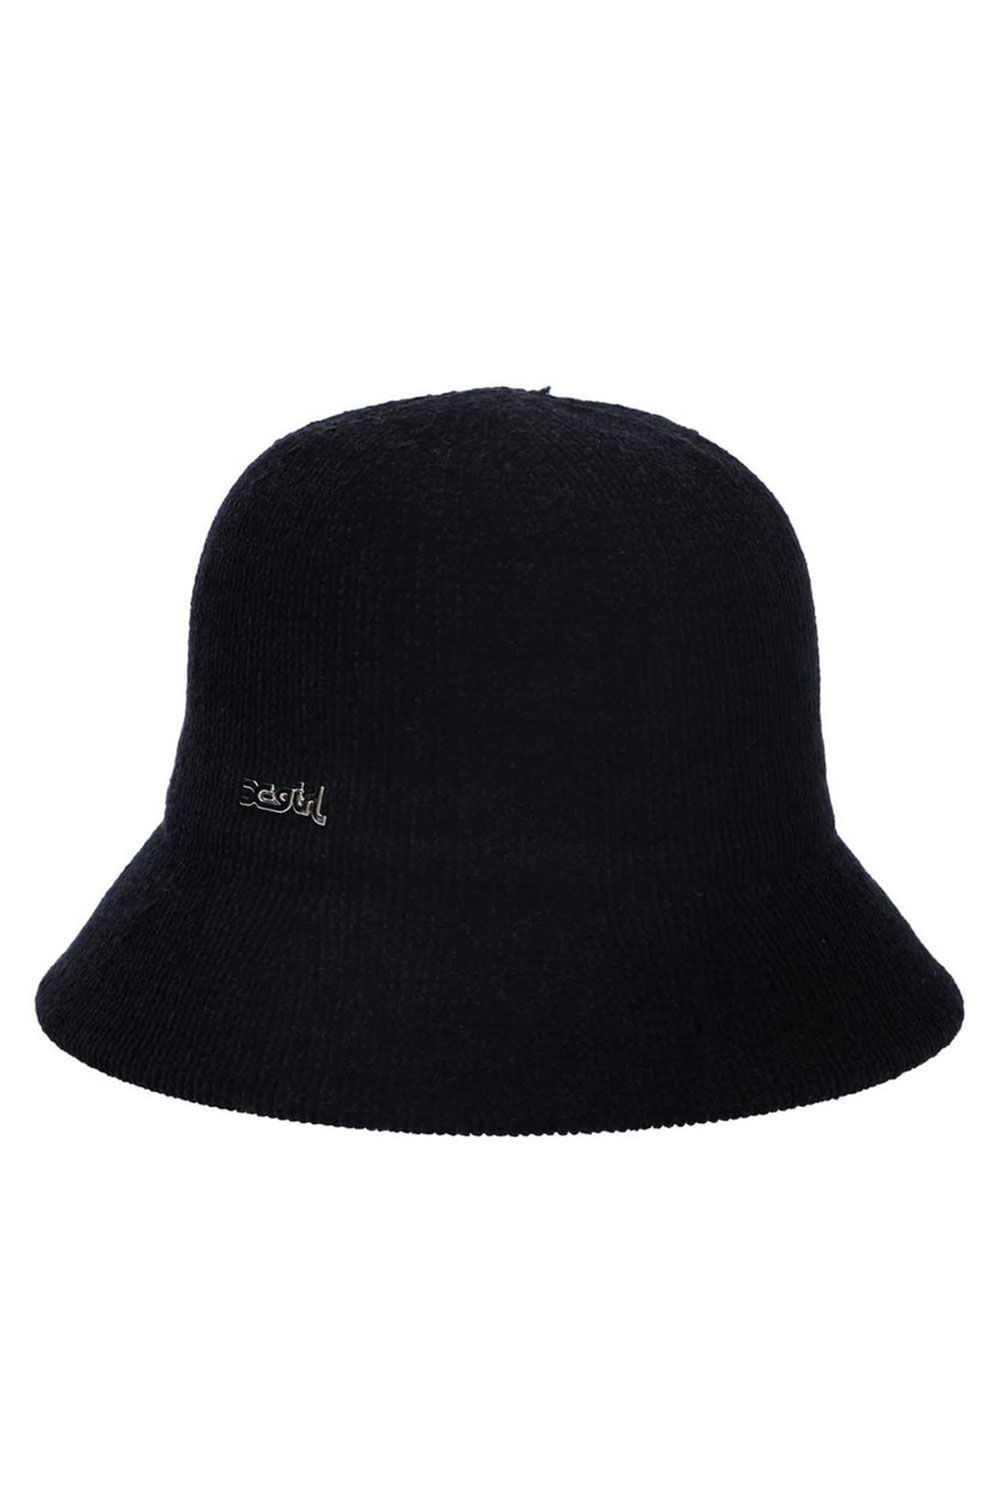 MOLE YARN HAT - - ONE SIZE - ブラック